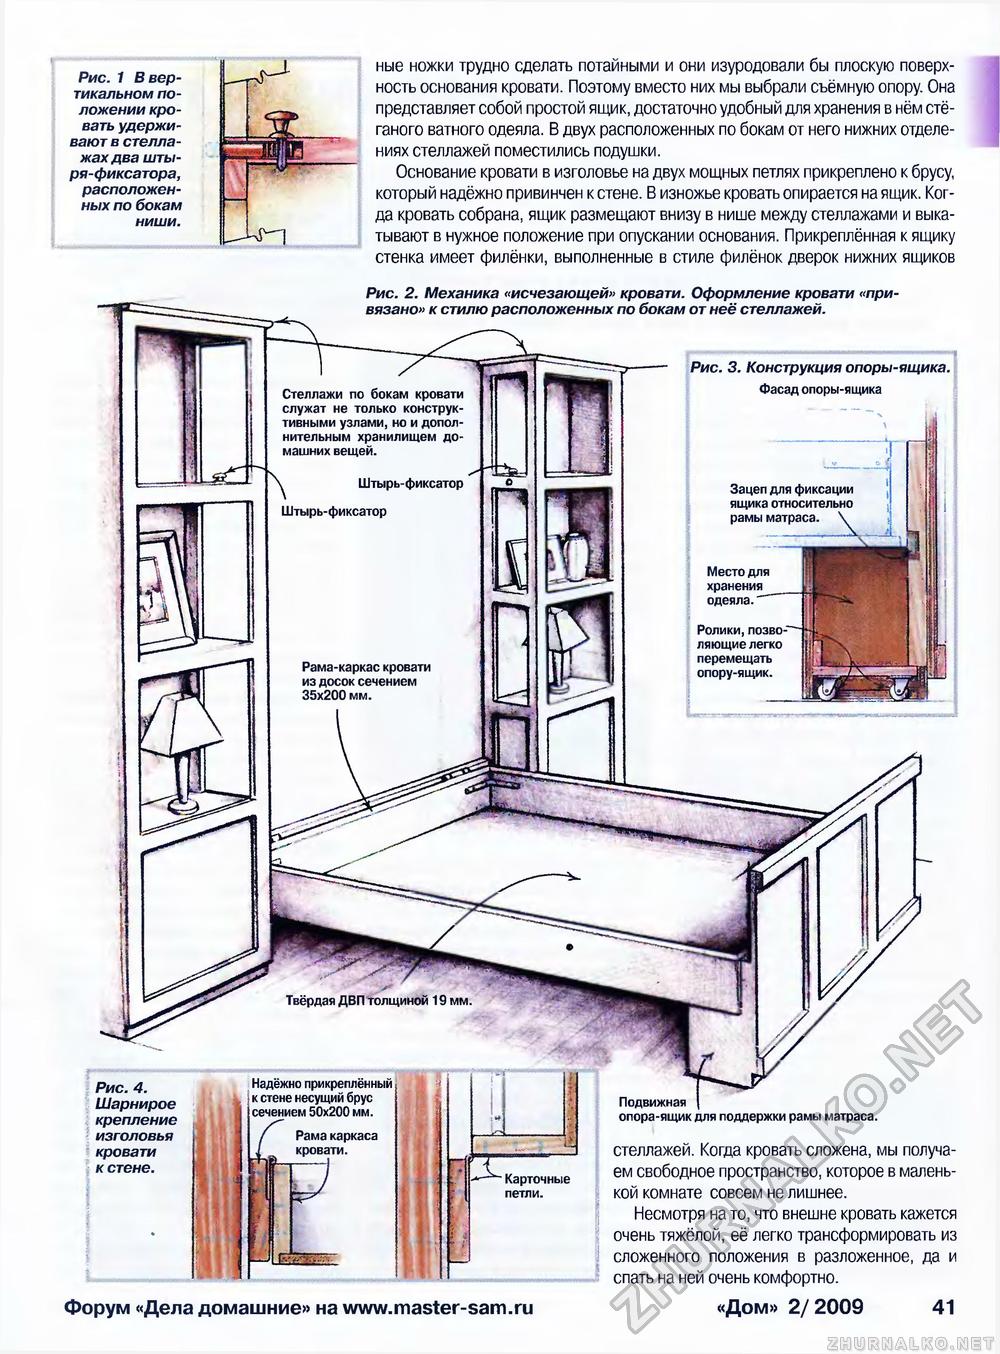 Дом 2009-02, страница 41